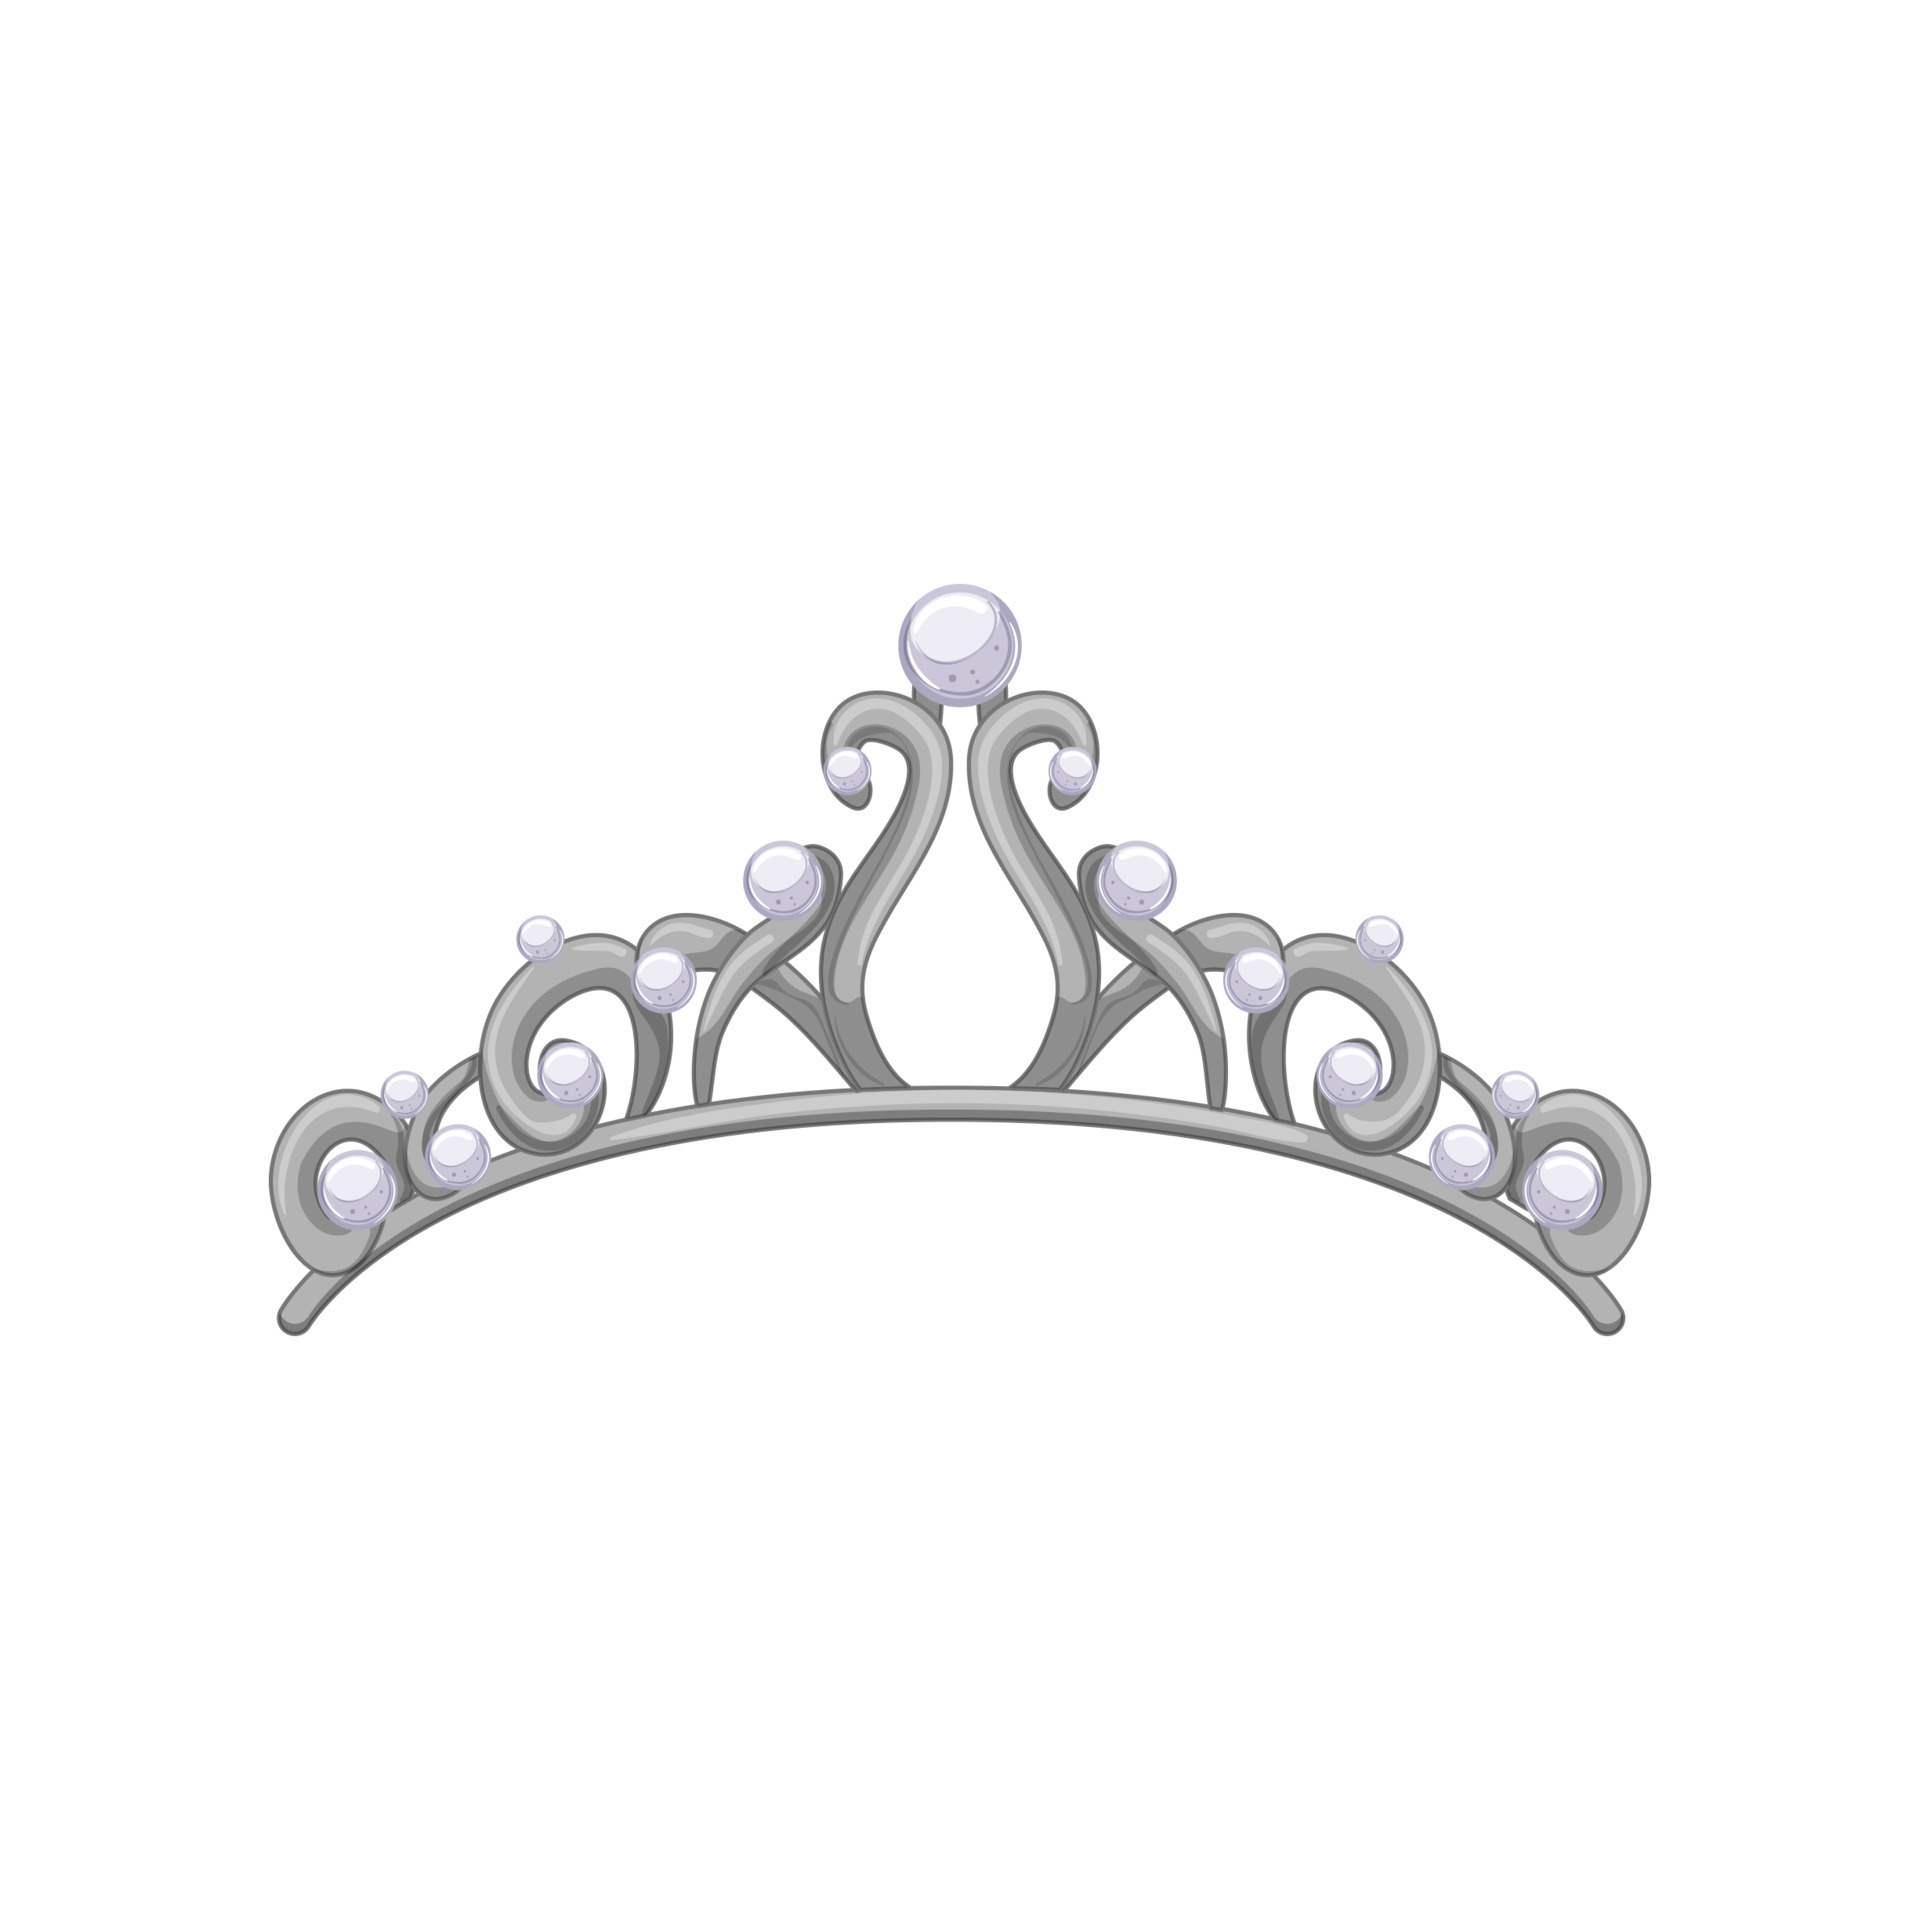 queen tiara crown cartoon vector illustration 17406624 Vector Art at  Vecteezy